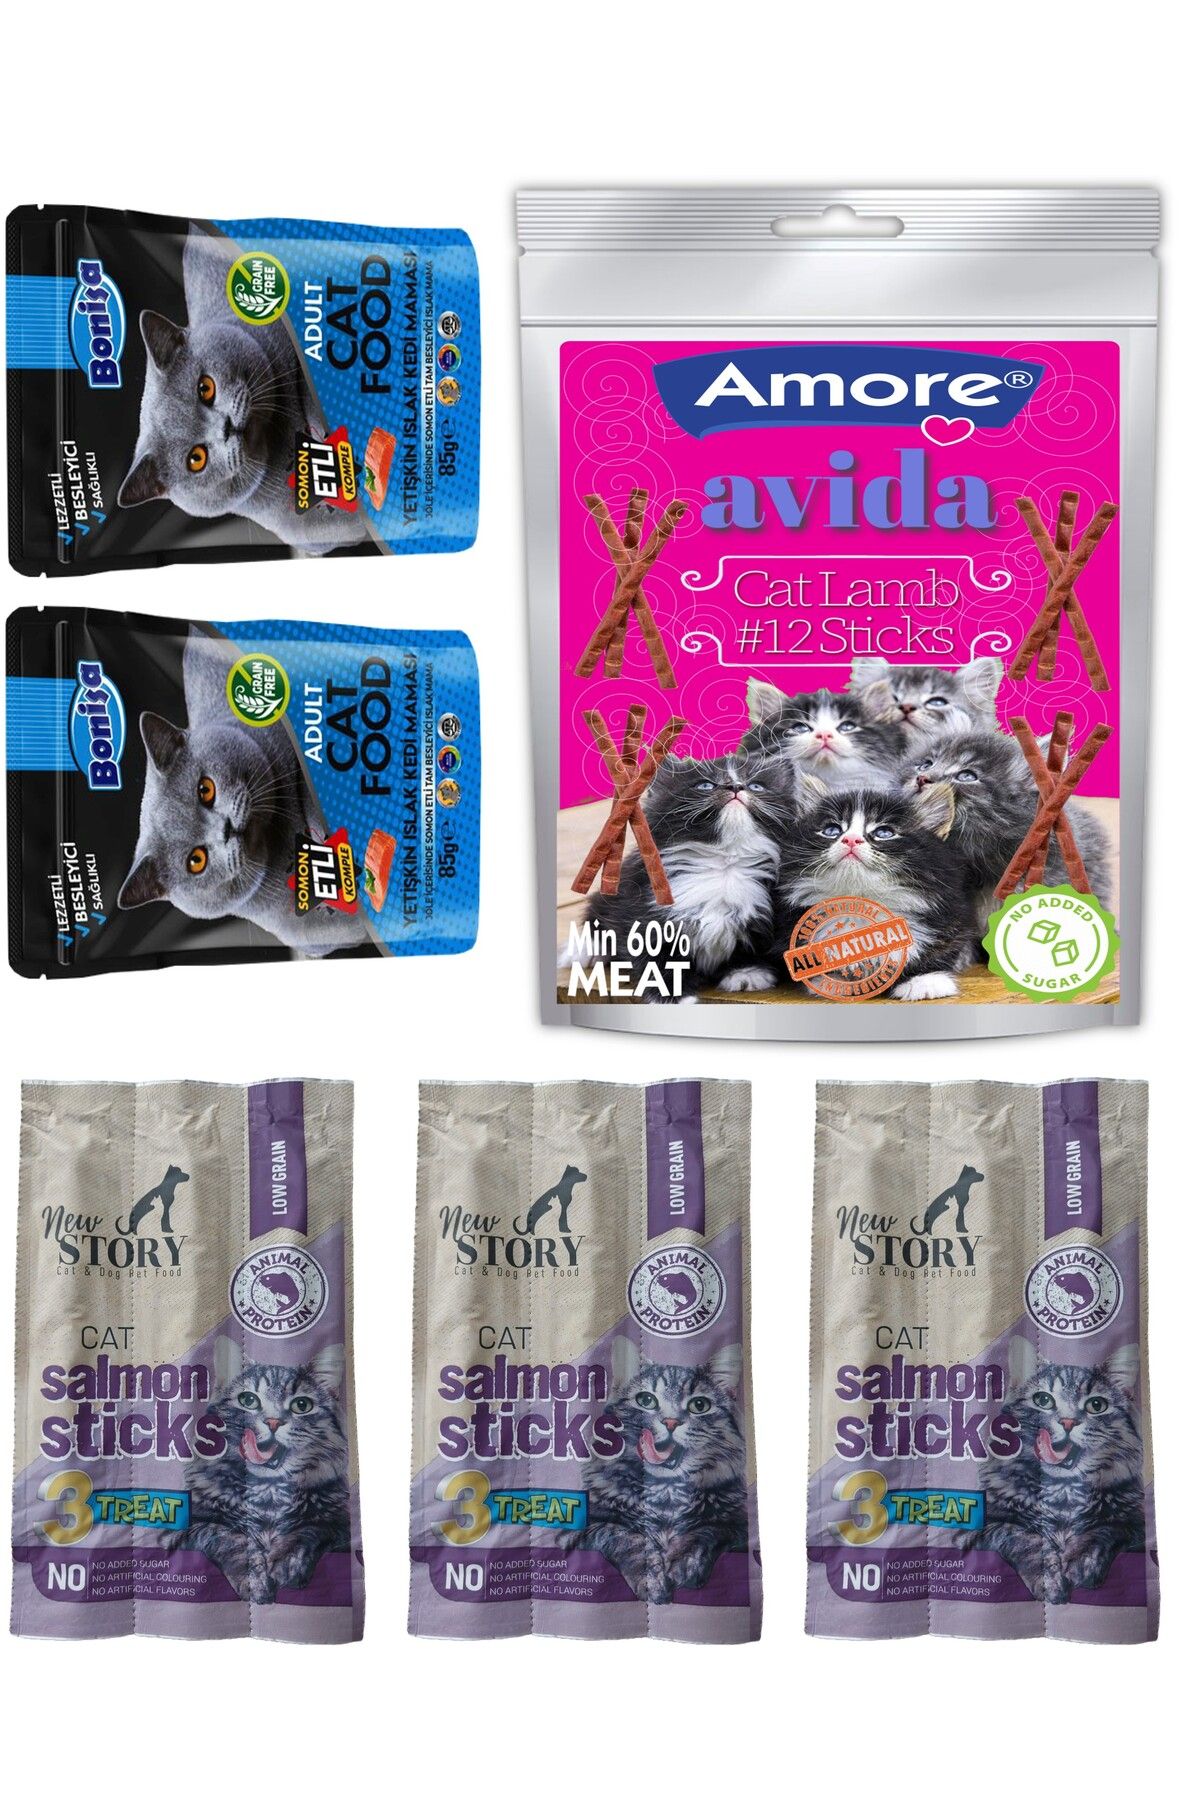 Amore Avida 12li Kuzu, New Story Salmon Sticks 3 paket 3x5gr Kedi Odul Cubuklari Mamasi, Somonlu Punch